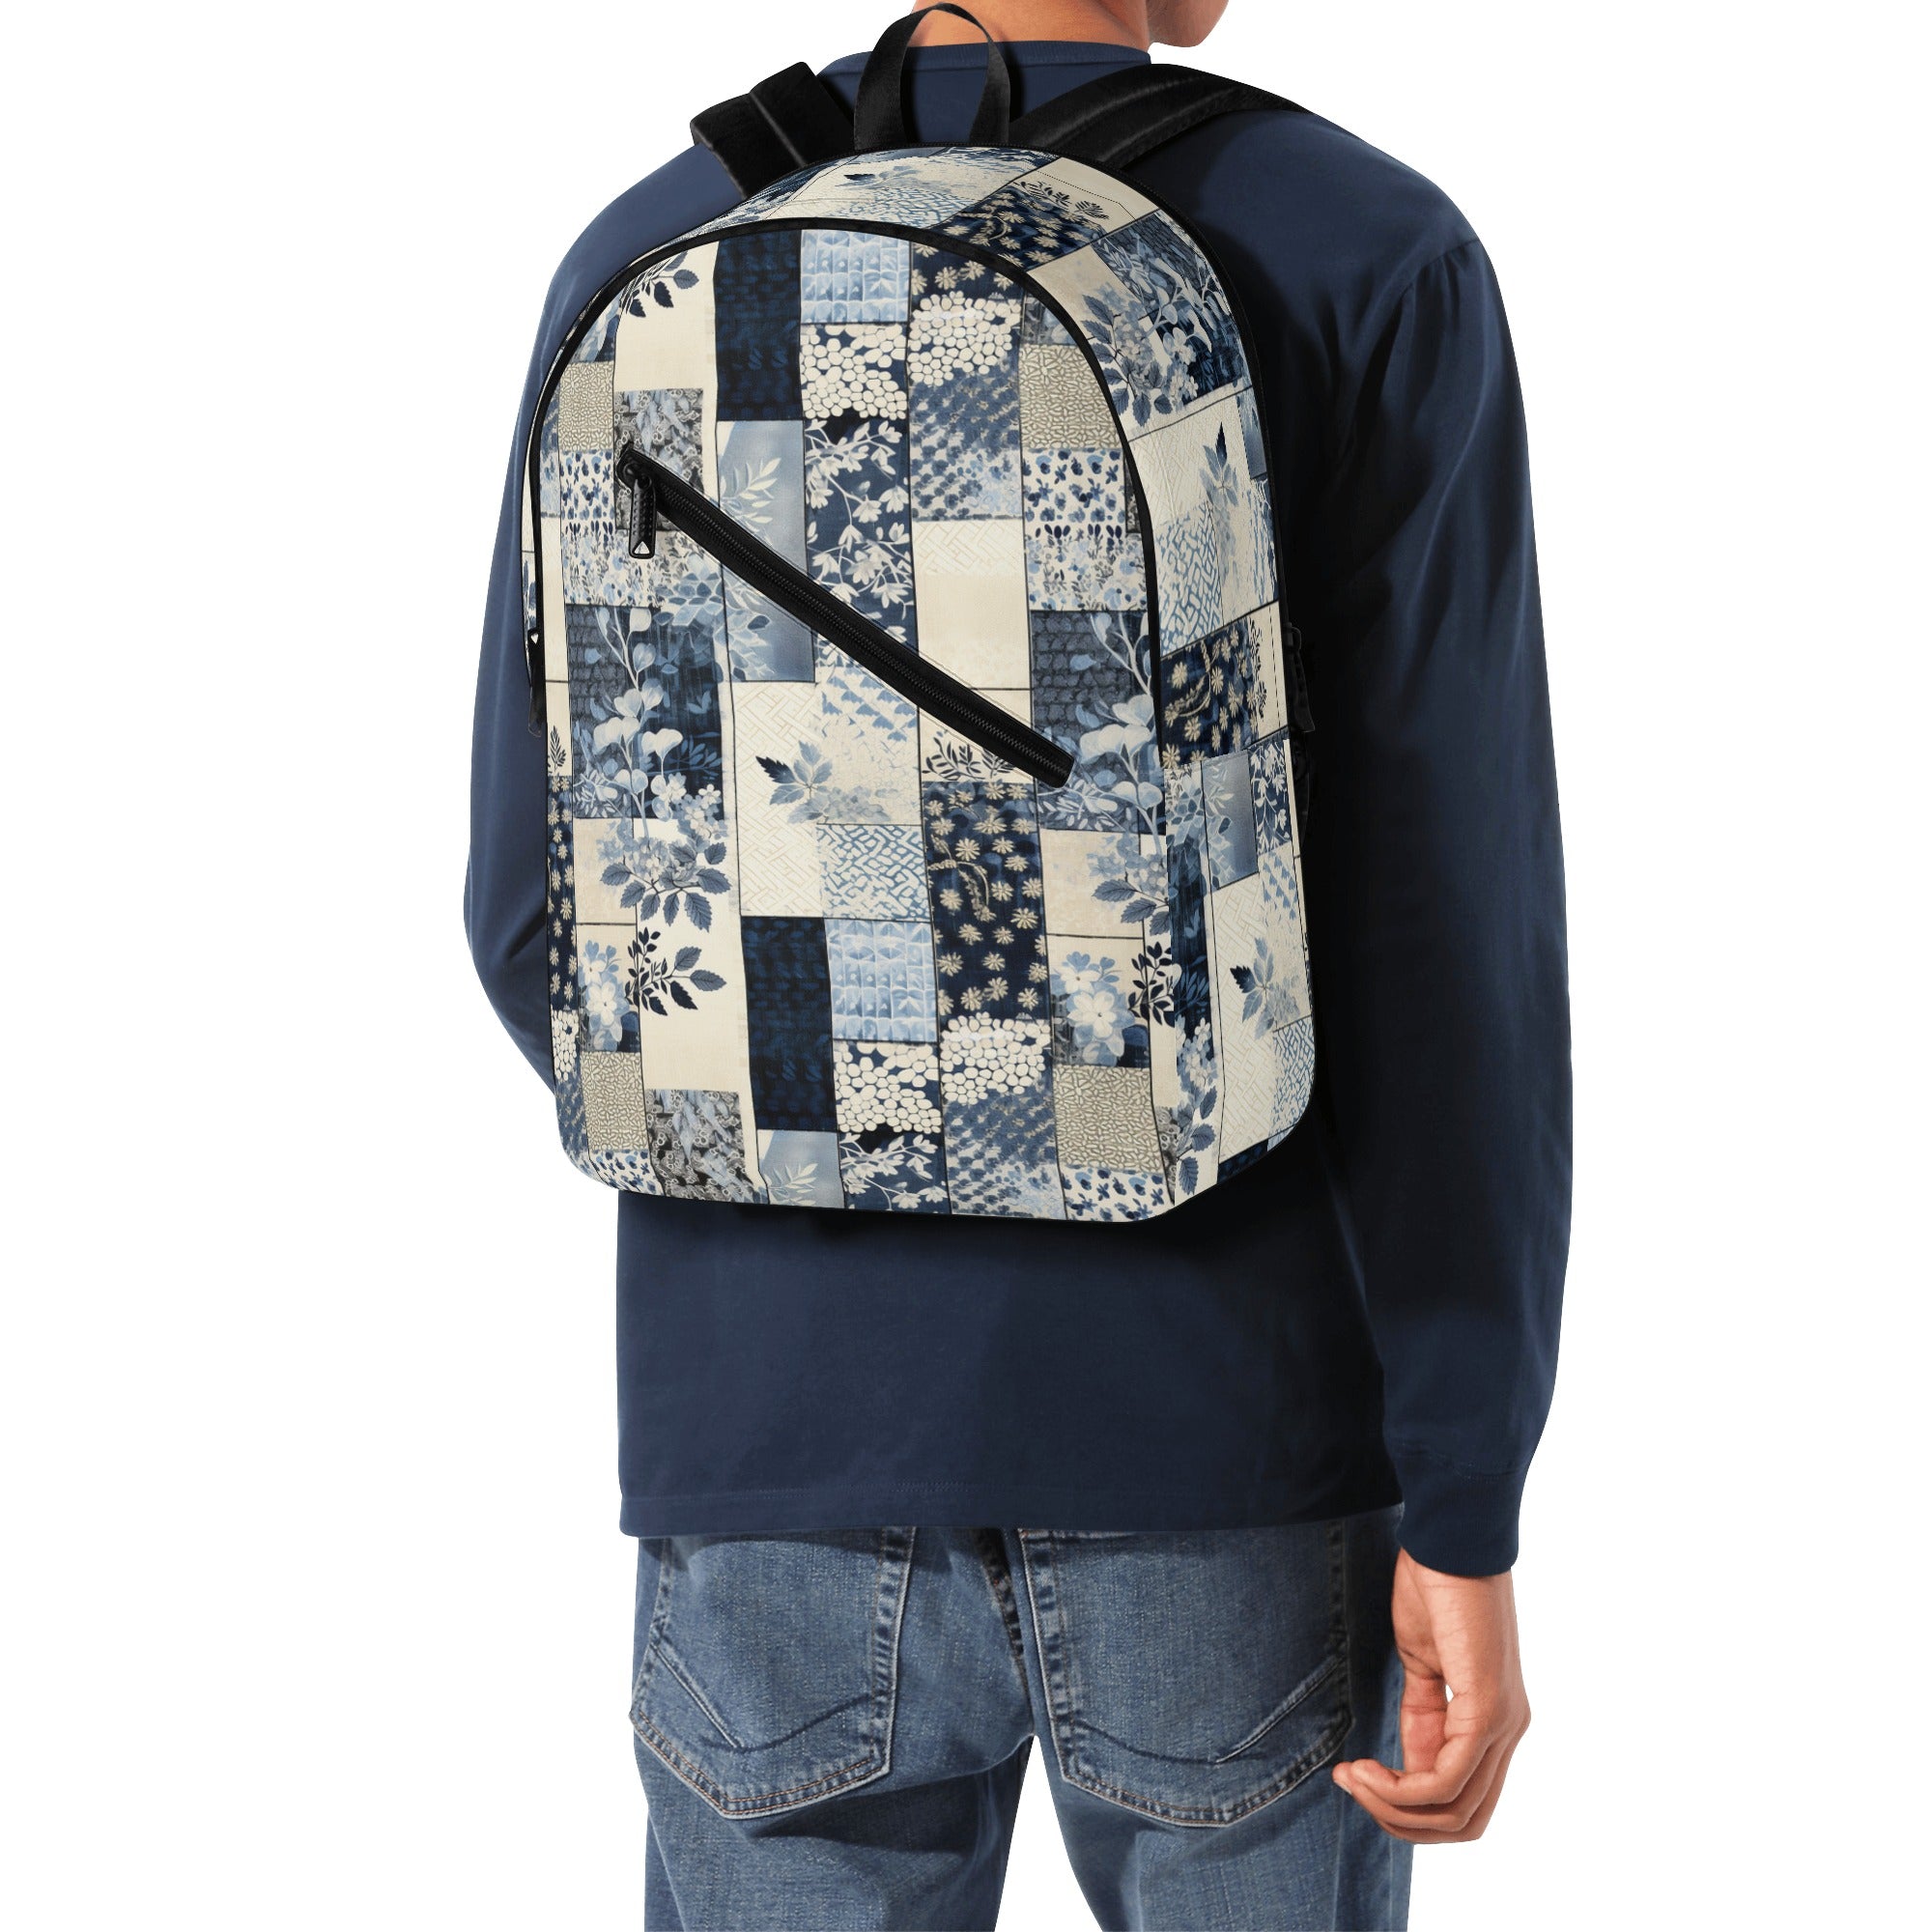 Blue Floral Patchwork Design Backpack